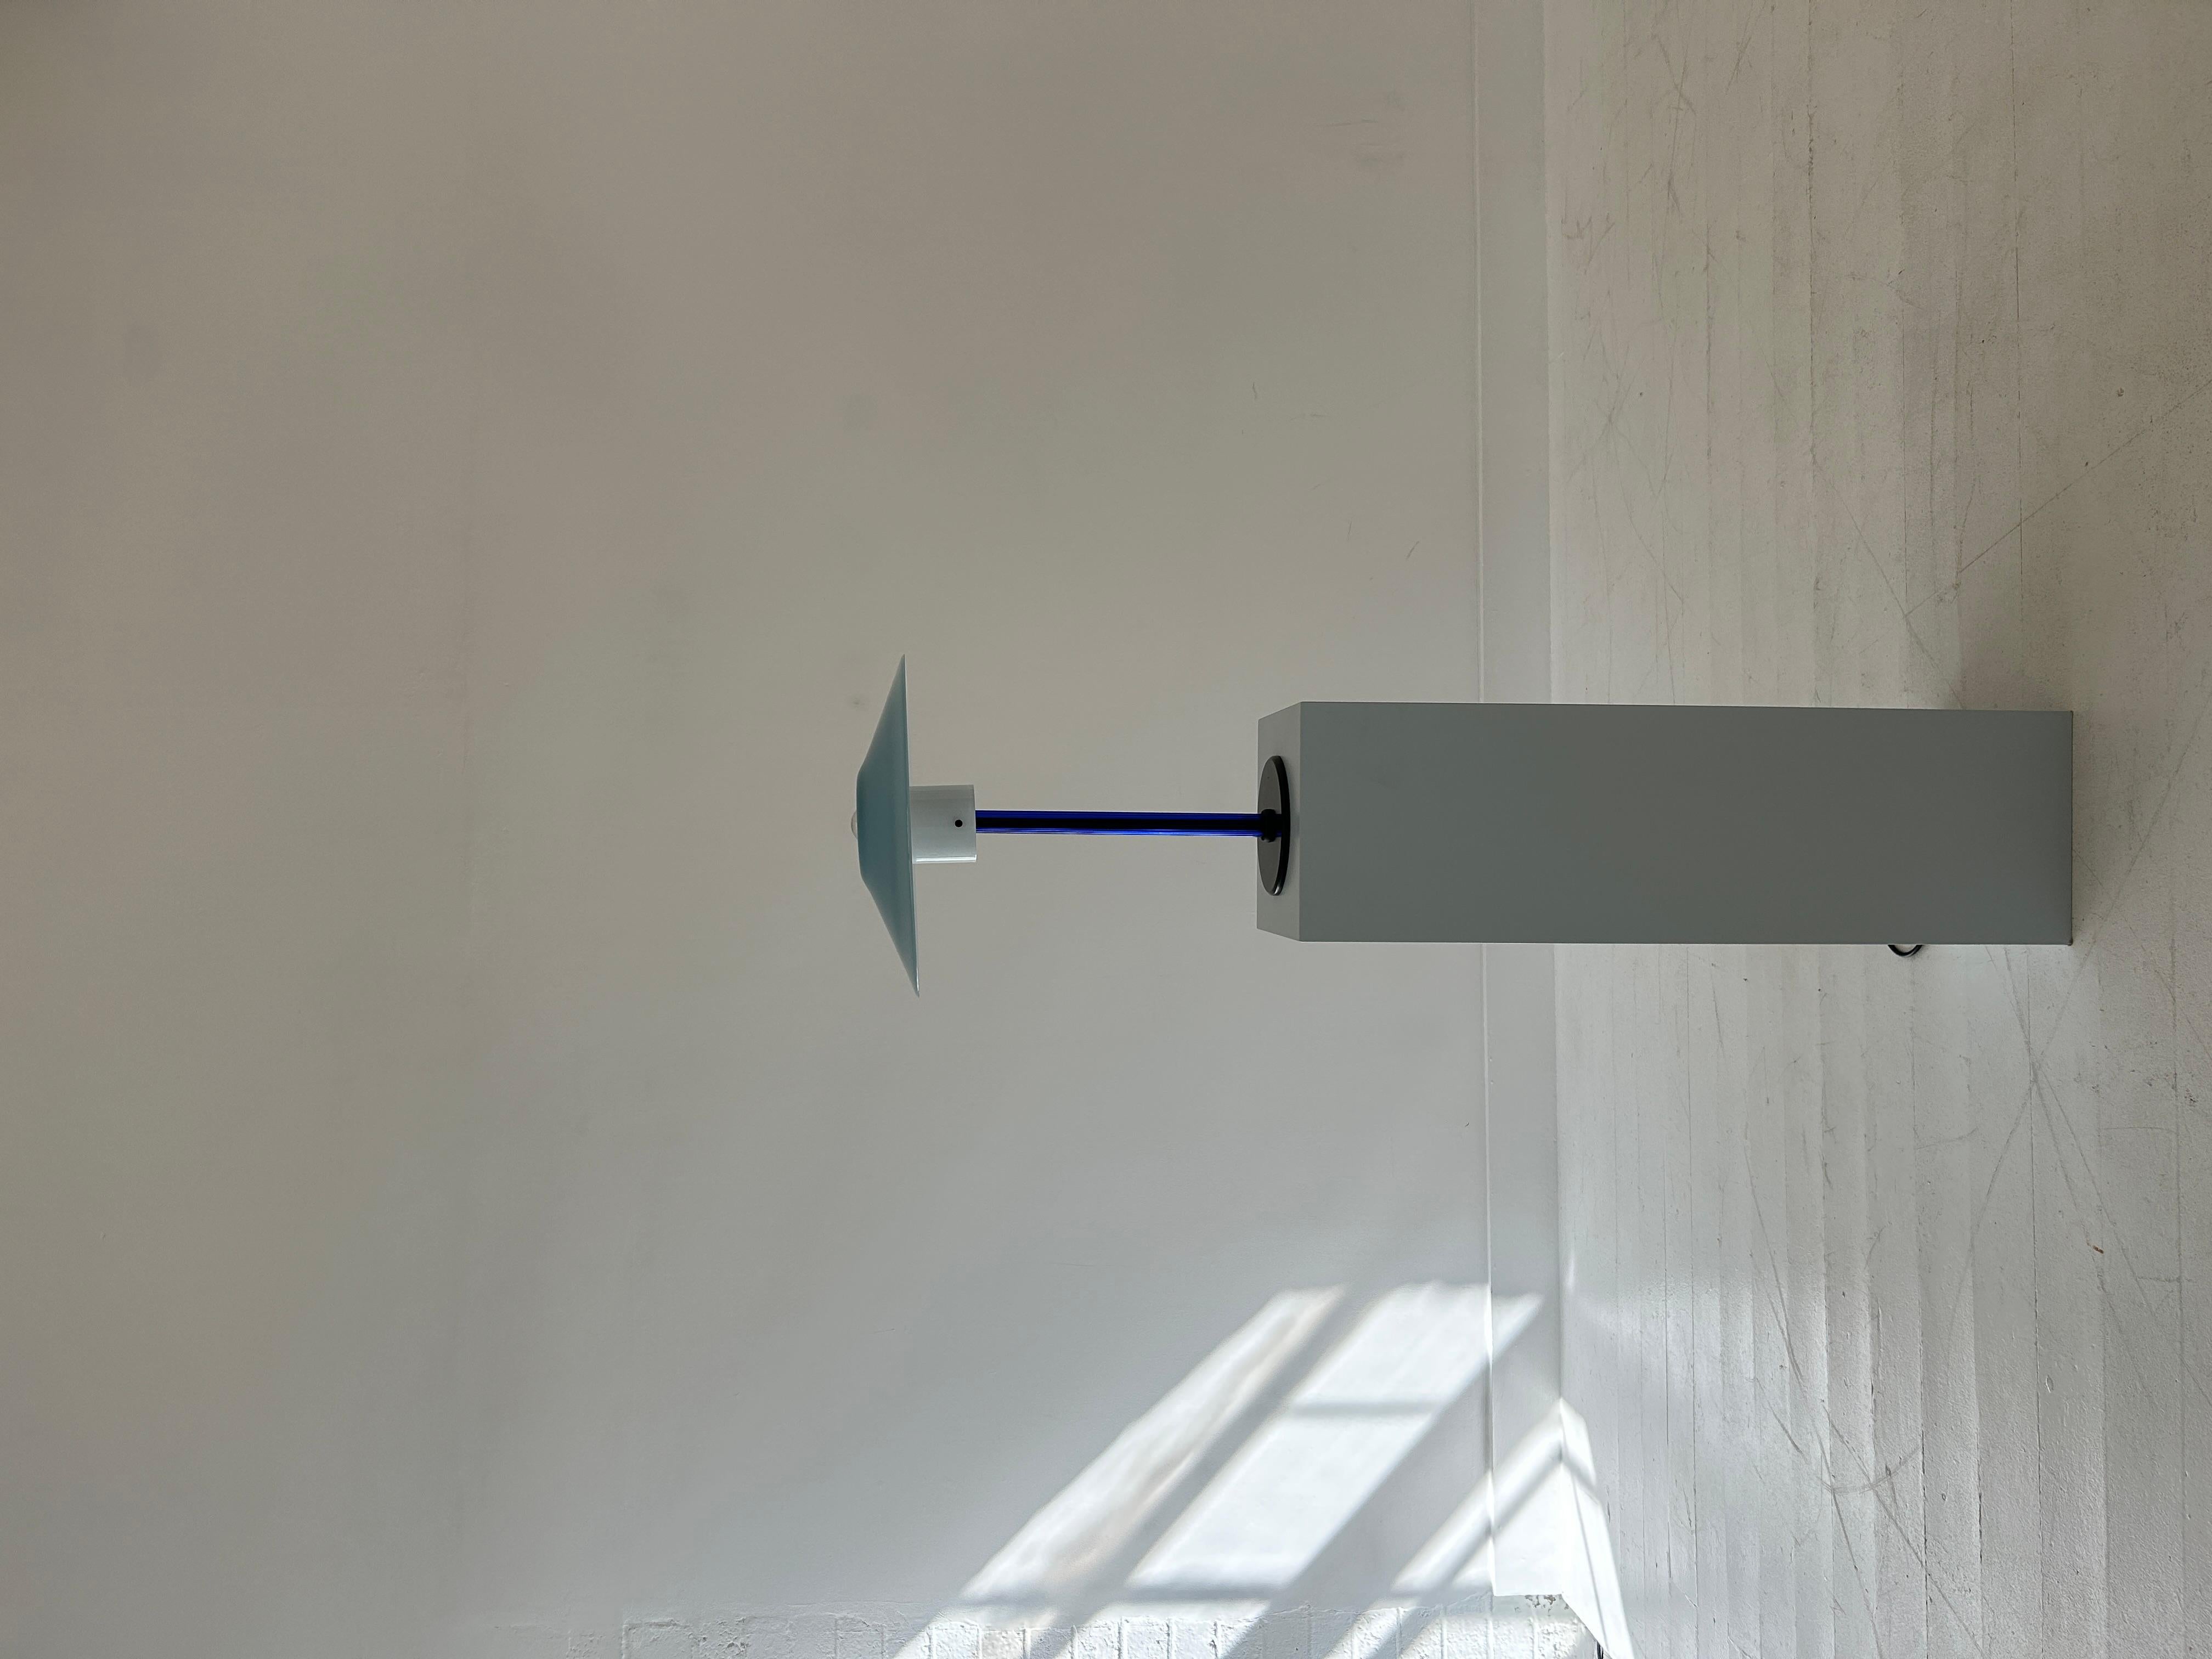 Eine elegante Tischleuchte aus mundgeblasenem Murano-Glas und einem runden Metallsockel. 

Der Schirm besteht aus einem einzigen Stück Glas, das mit dem geriffelten Glasstiel durch drei Schrauben verbunden ist. Das Licht dringt durch das Opalglas am